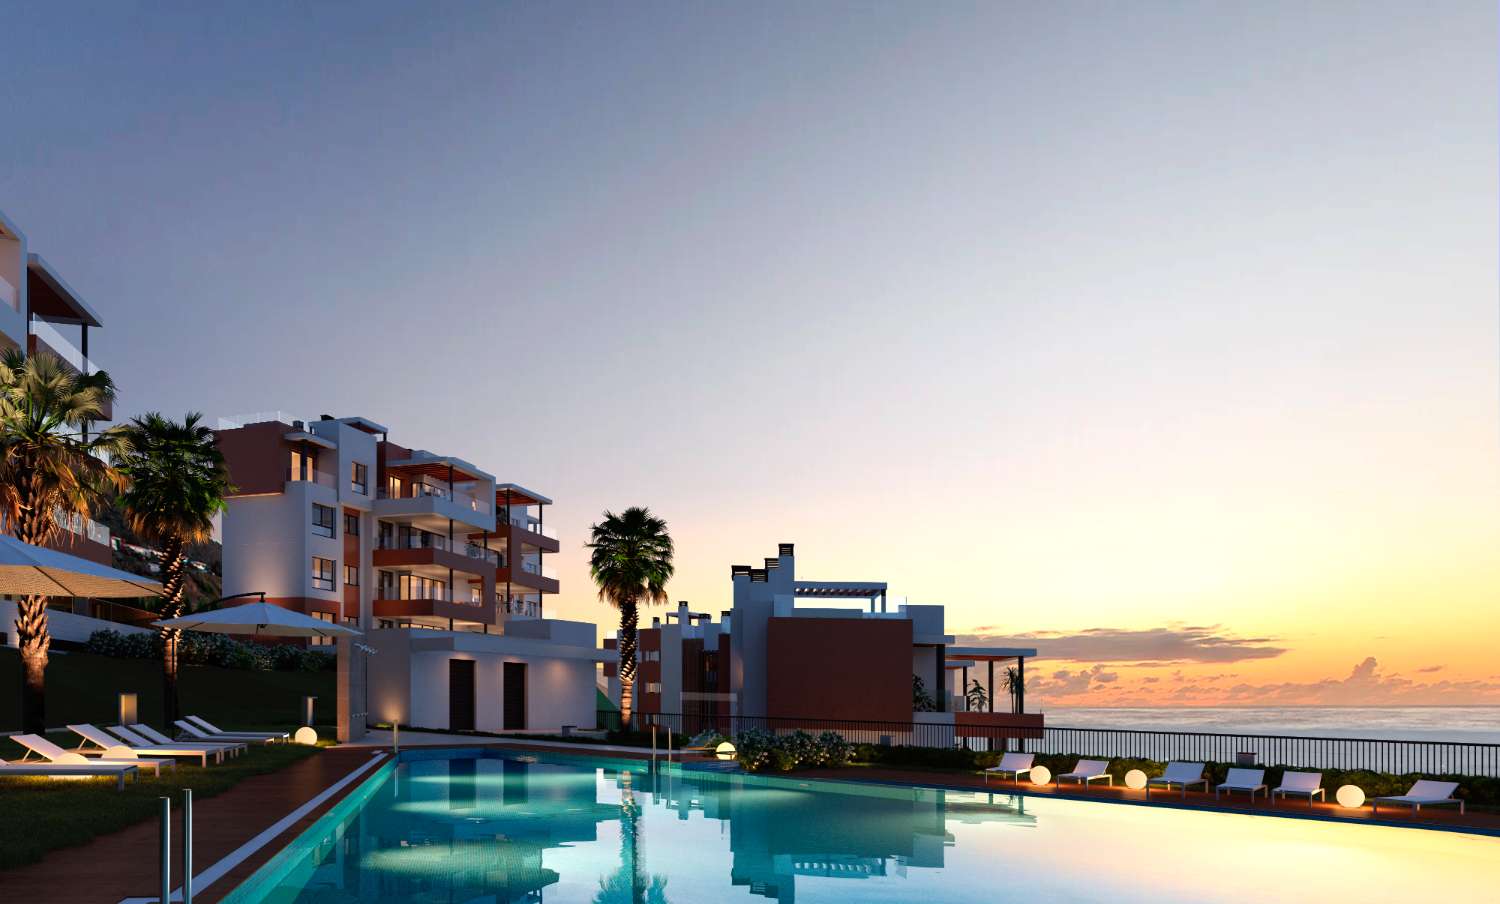 Romslig 3 roms leilighet med en privilegert beliggenhet noen få minutter fra stranden med terrasse på 62 m2